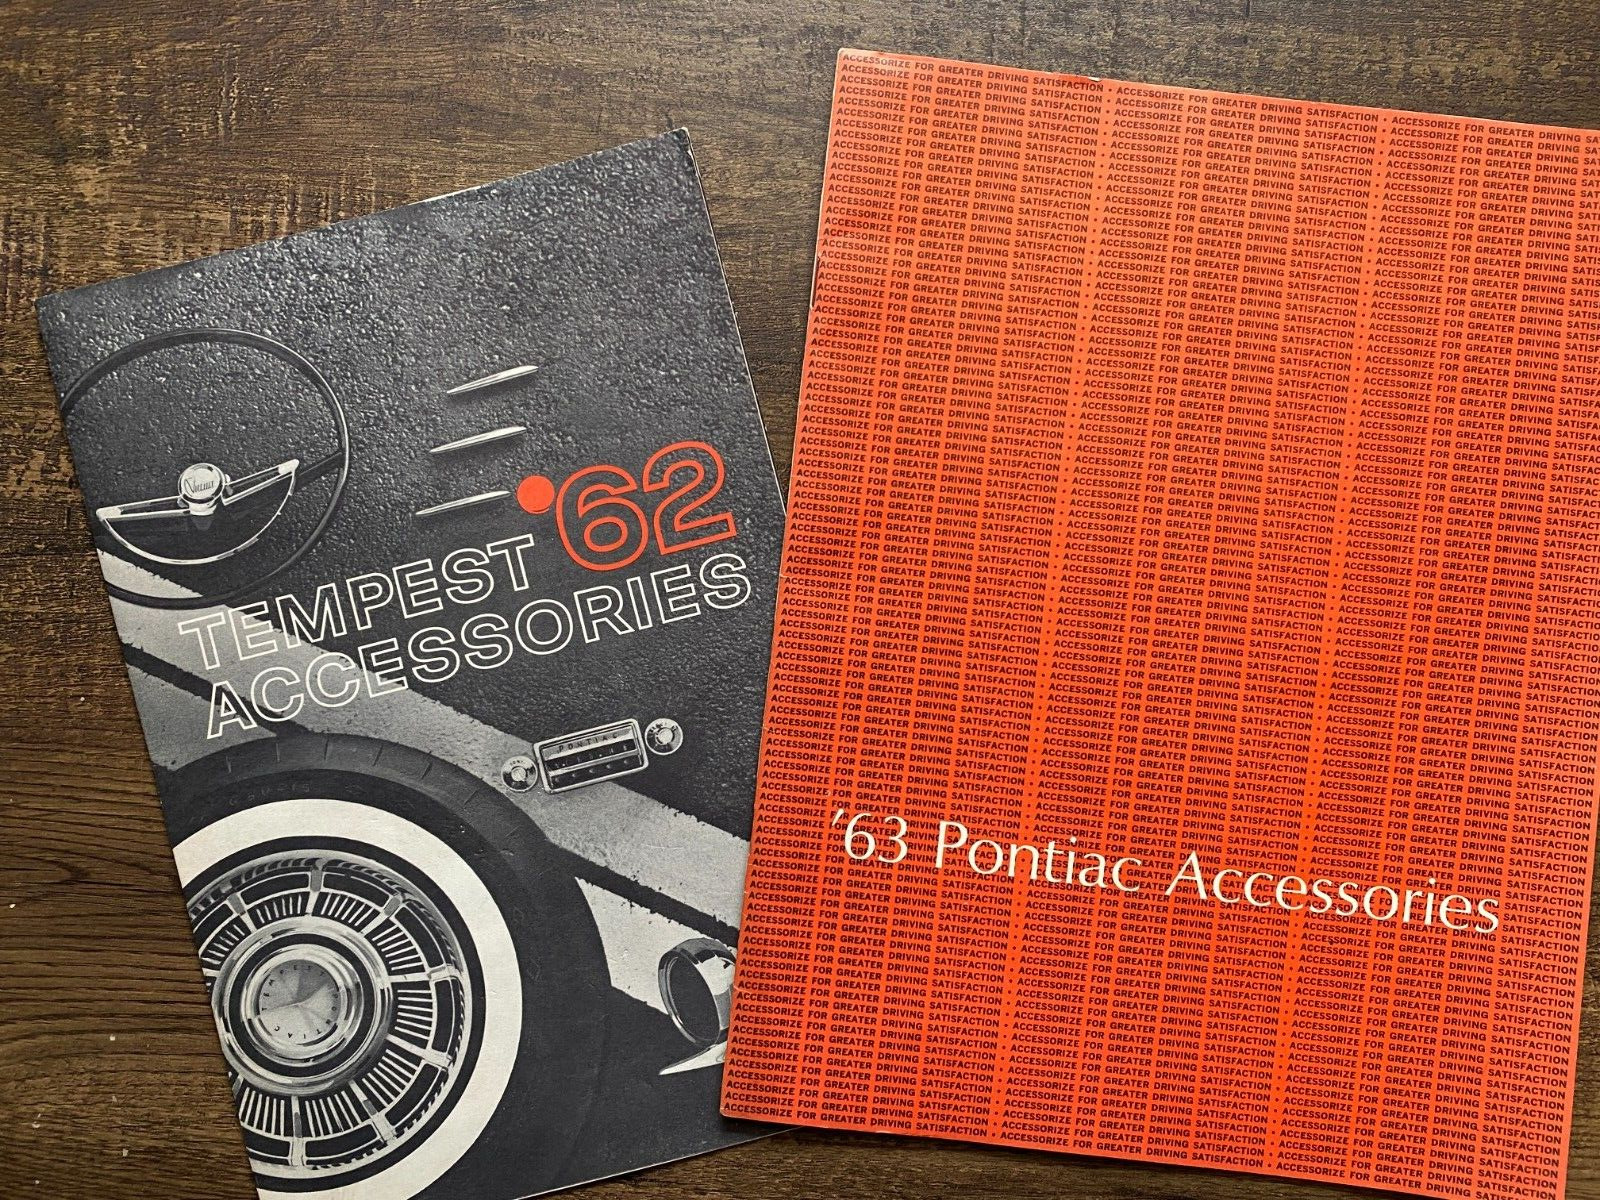 1963 Pontiac Accessories Catalog & Tempest \'62 Accessories Catalog